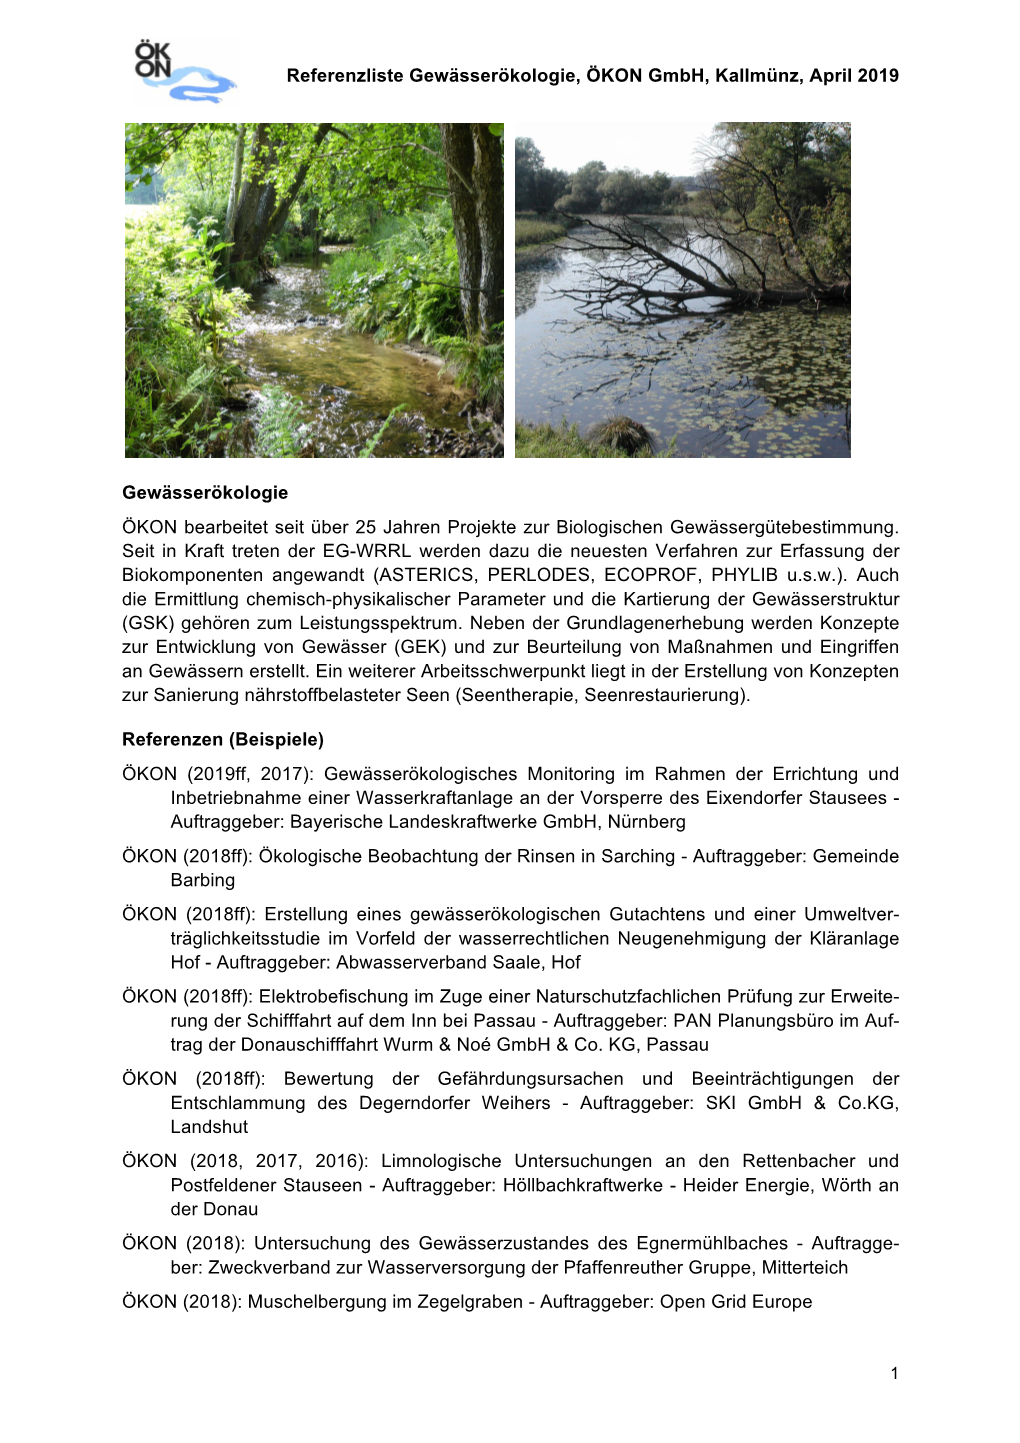 Referenzen Gewässerbiologie (PDF)